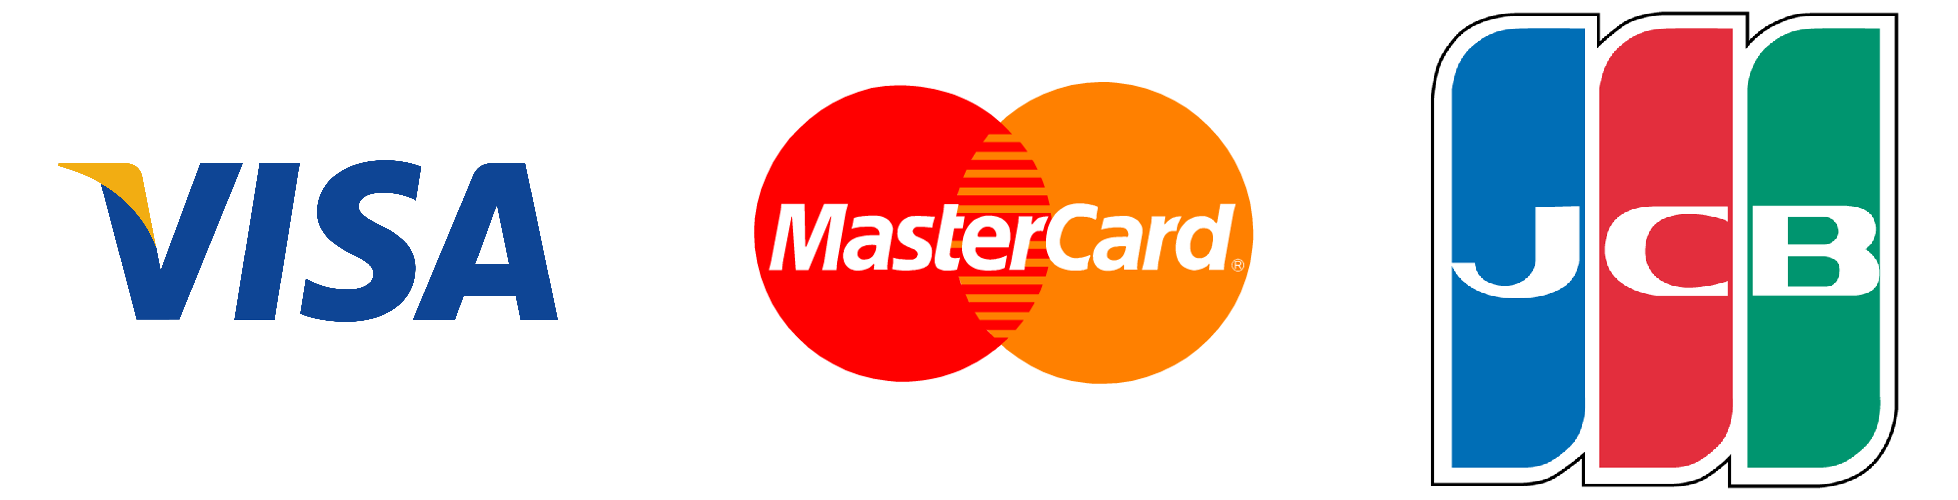 OKPAY accepts Visa, MasterCard, Maestro, JCB cards! - OKPAY - EU 